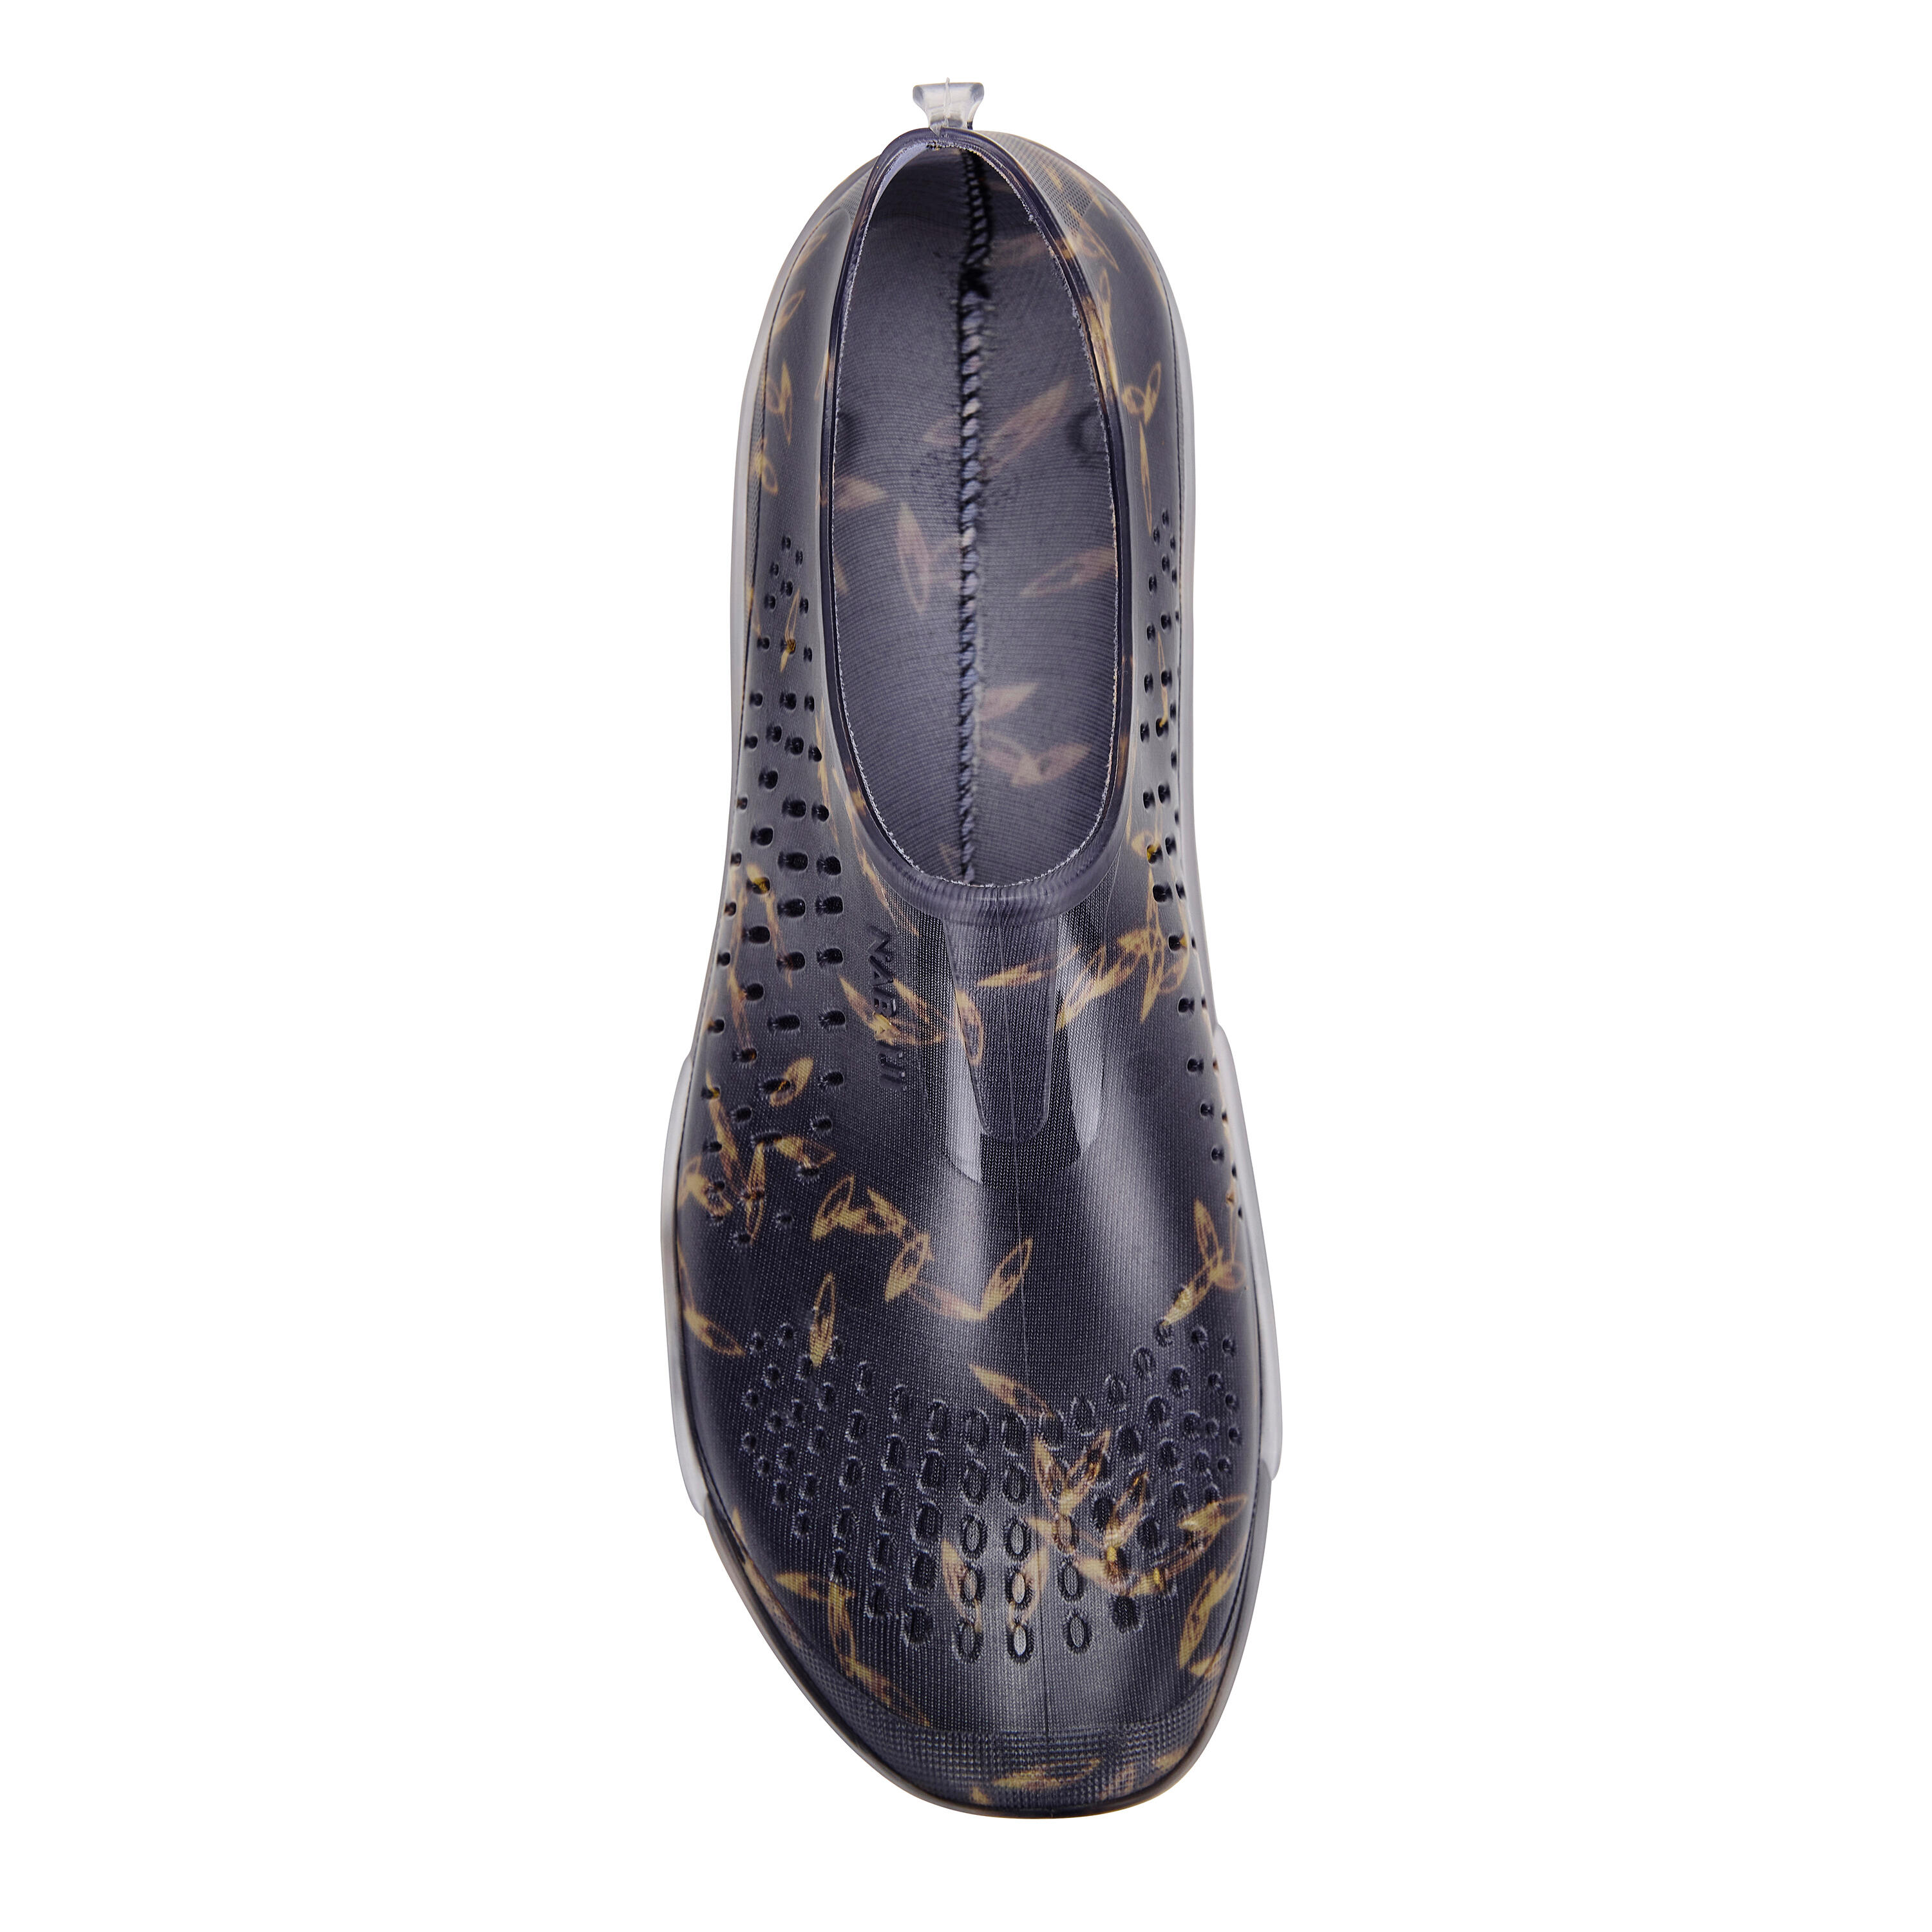 Aquabiking/Aquagym Shoes Fitshoe shoes dif dark blue 6/8